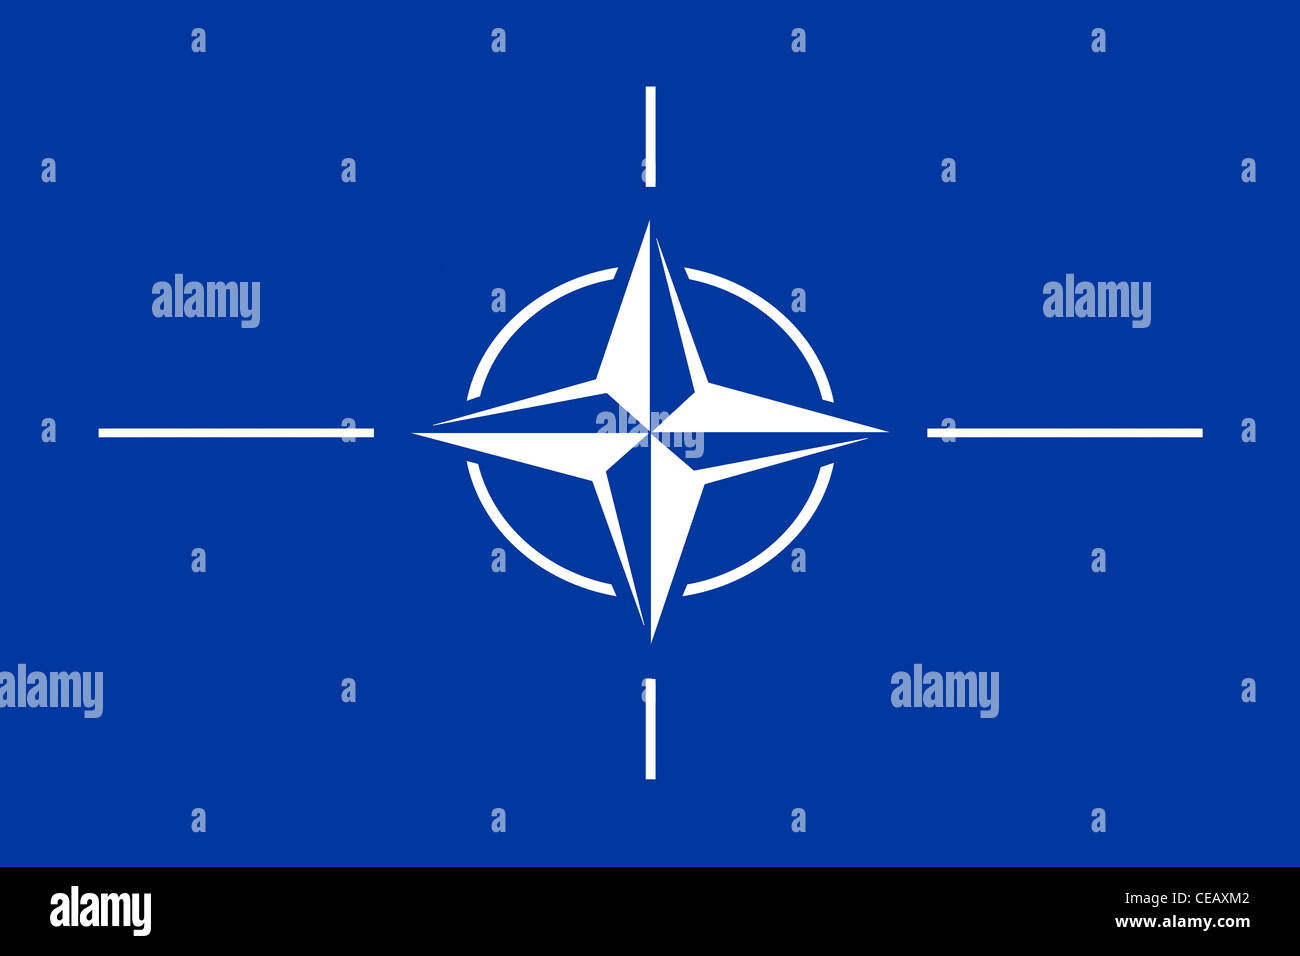 Flags of the NATO - North Atlantic Treaty Organization. Stock Photo